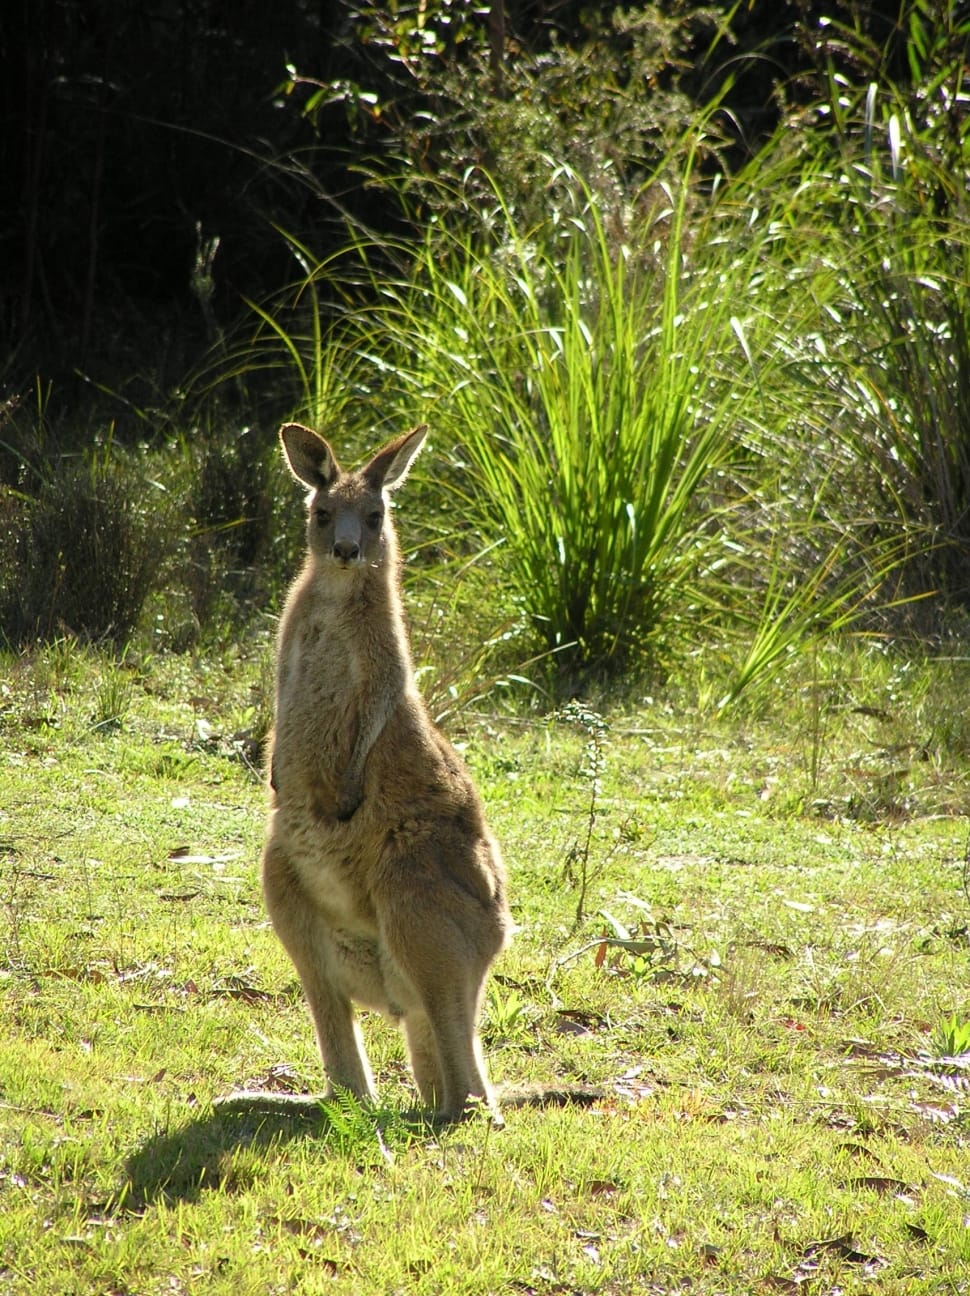 kangaroo on grass preview